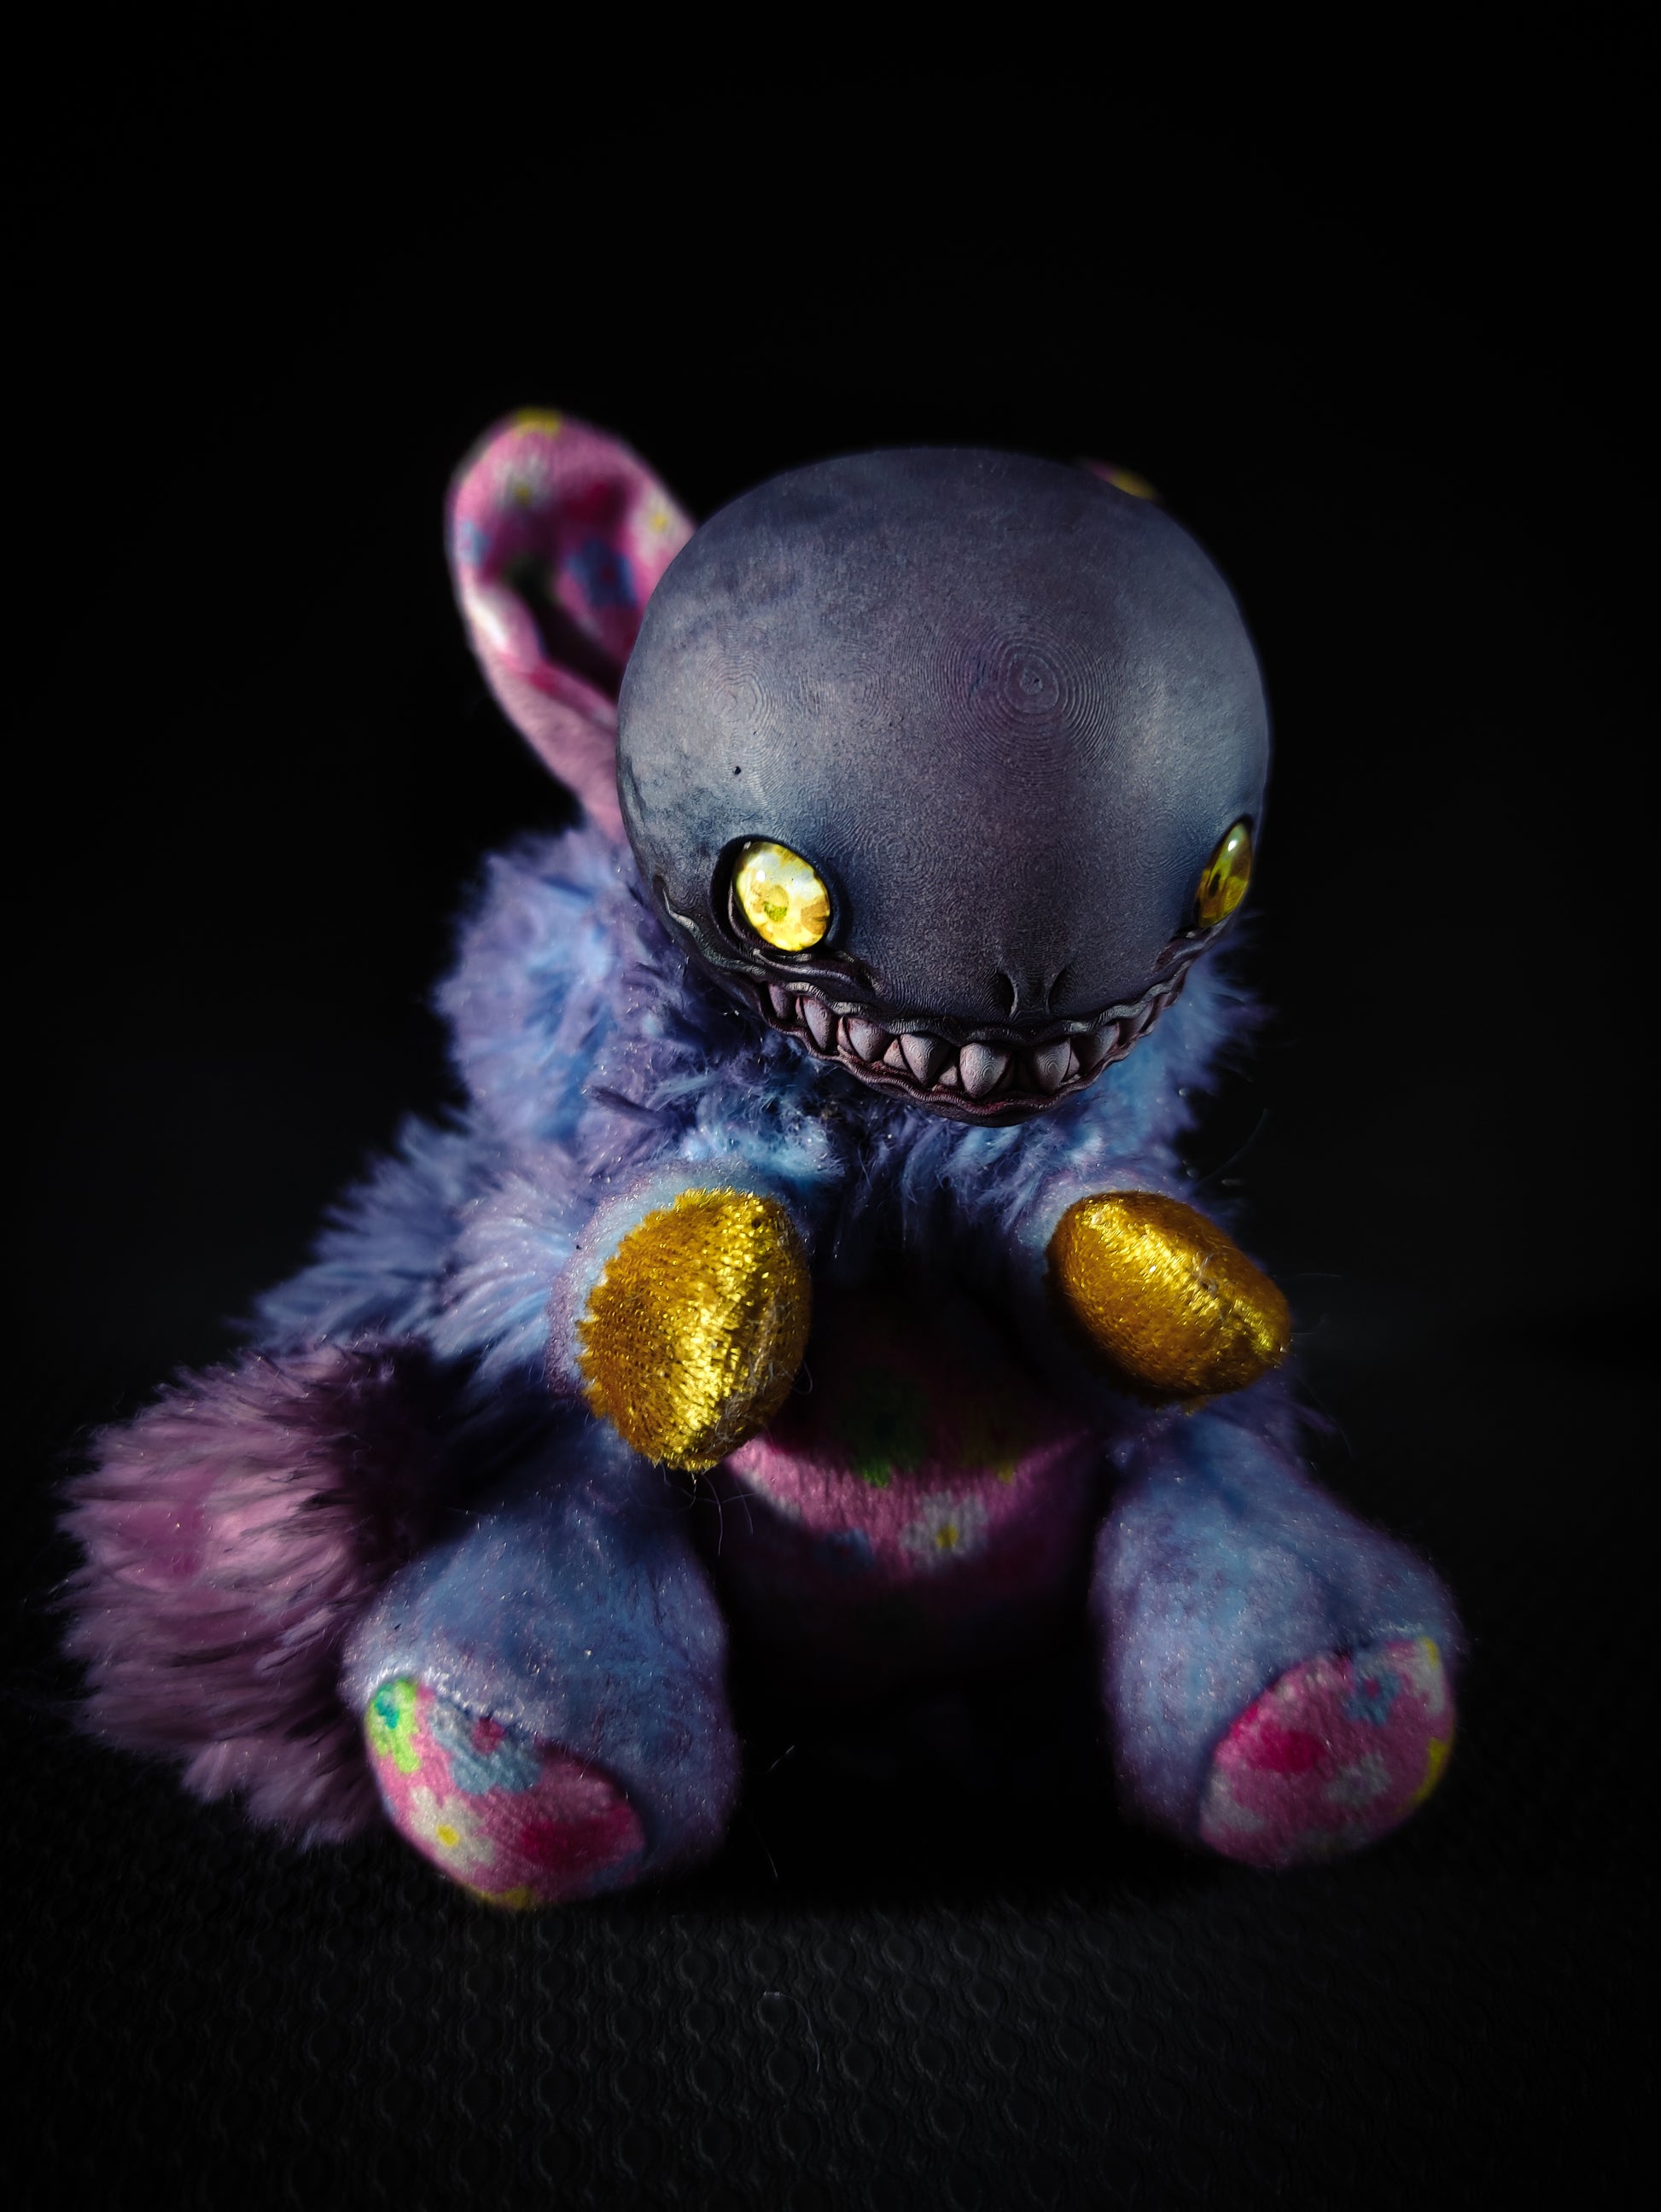 Globuch - FRIEND Cryptid Art Doll Plush Toy